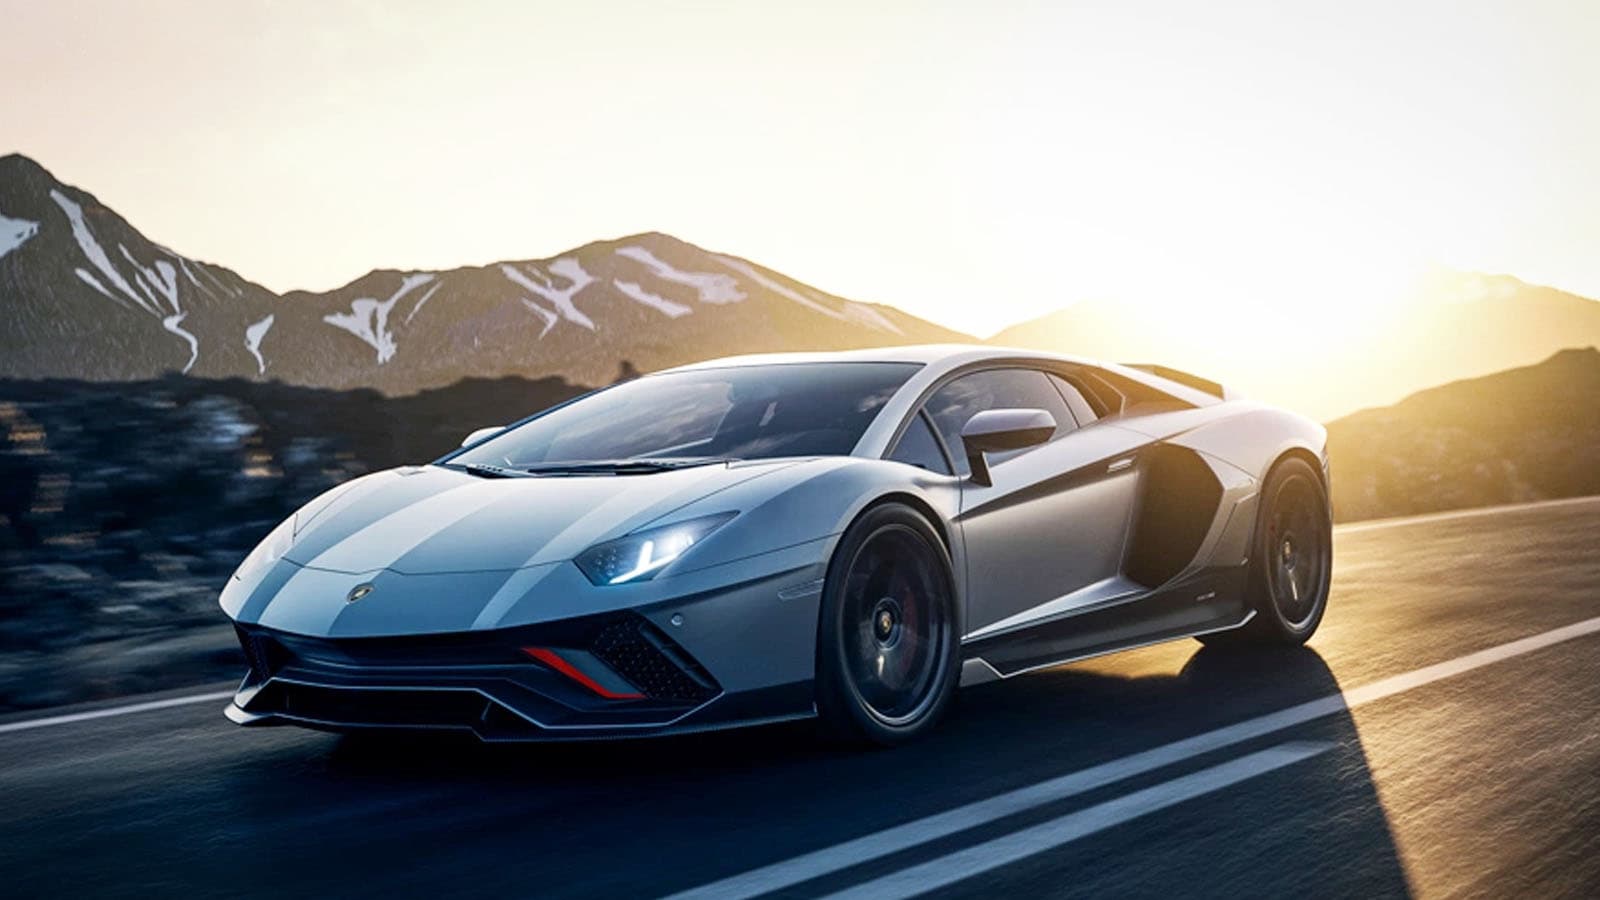 “Cỗ máy tối thượng” cuối cùng trong dòng xe Lamborghini Aventador đã lộ diện